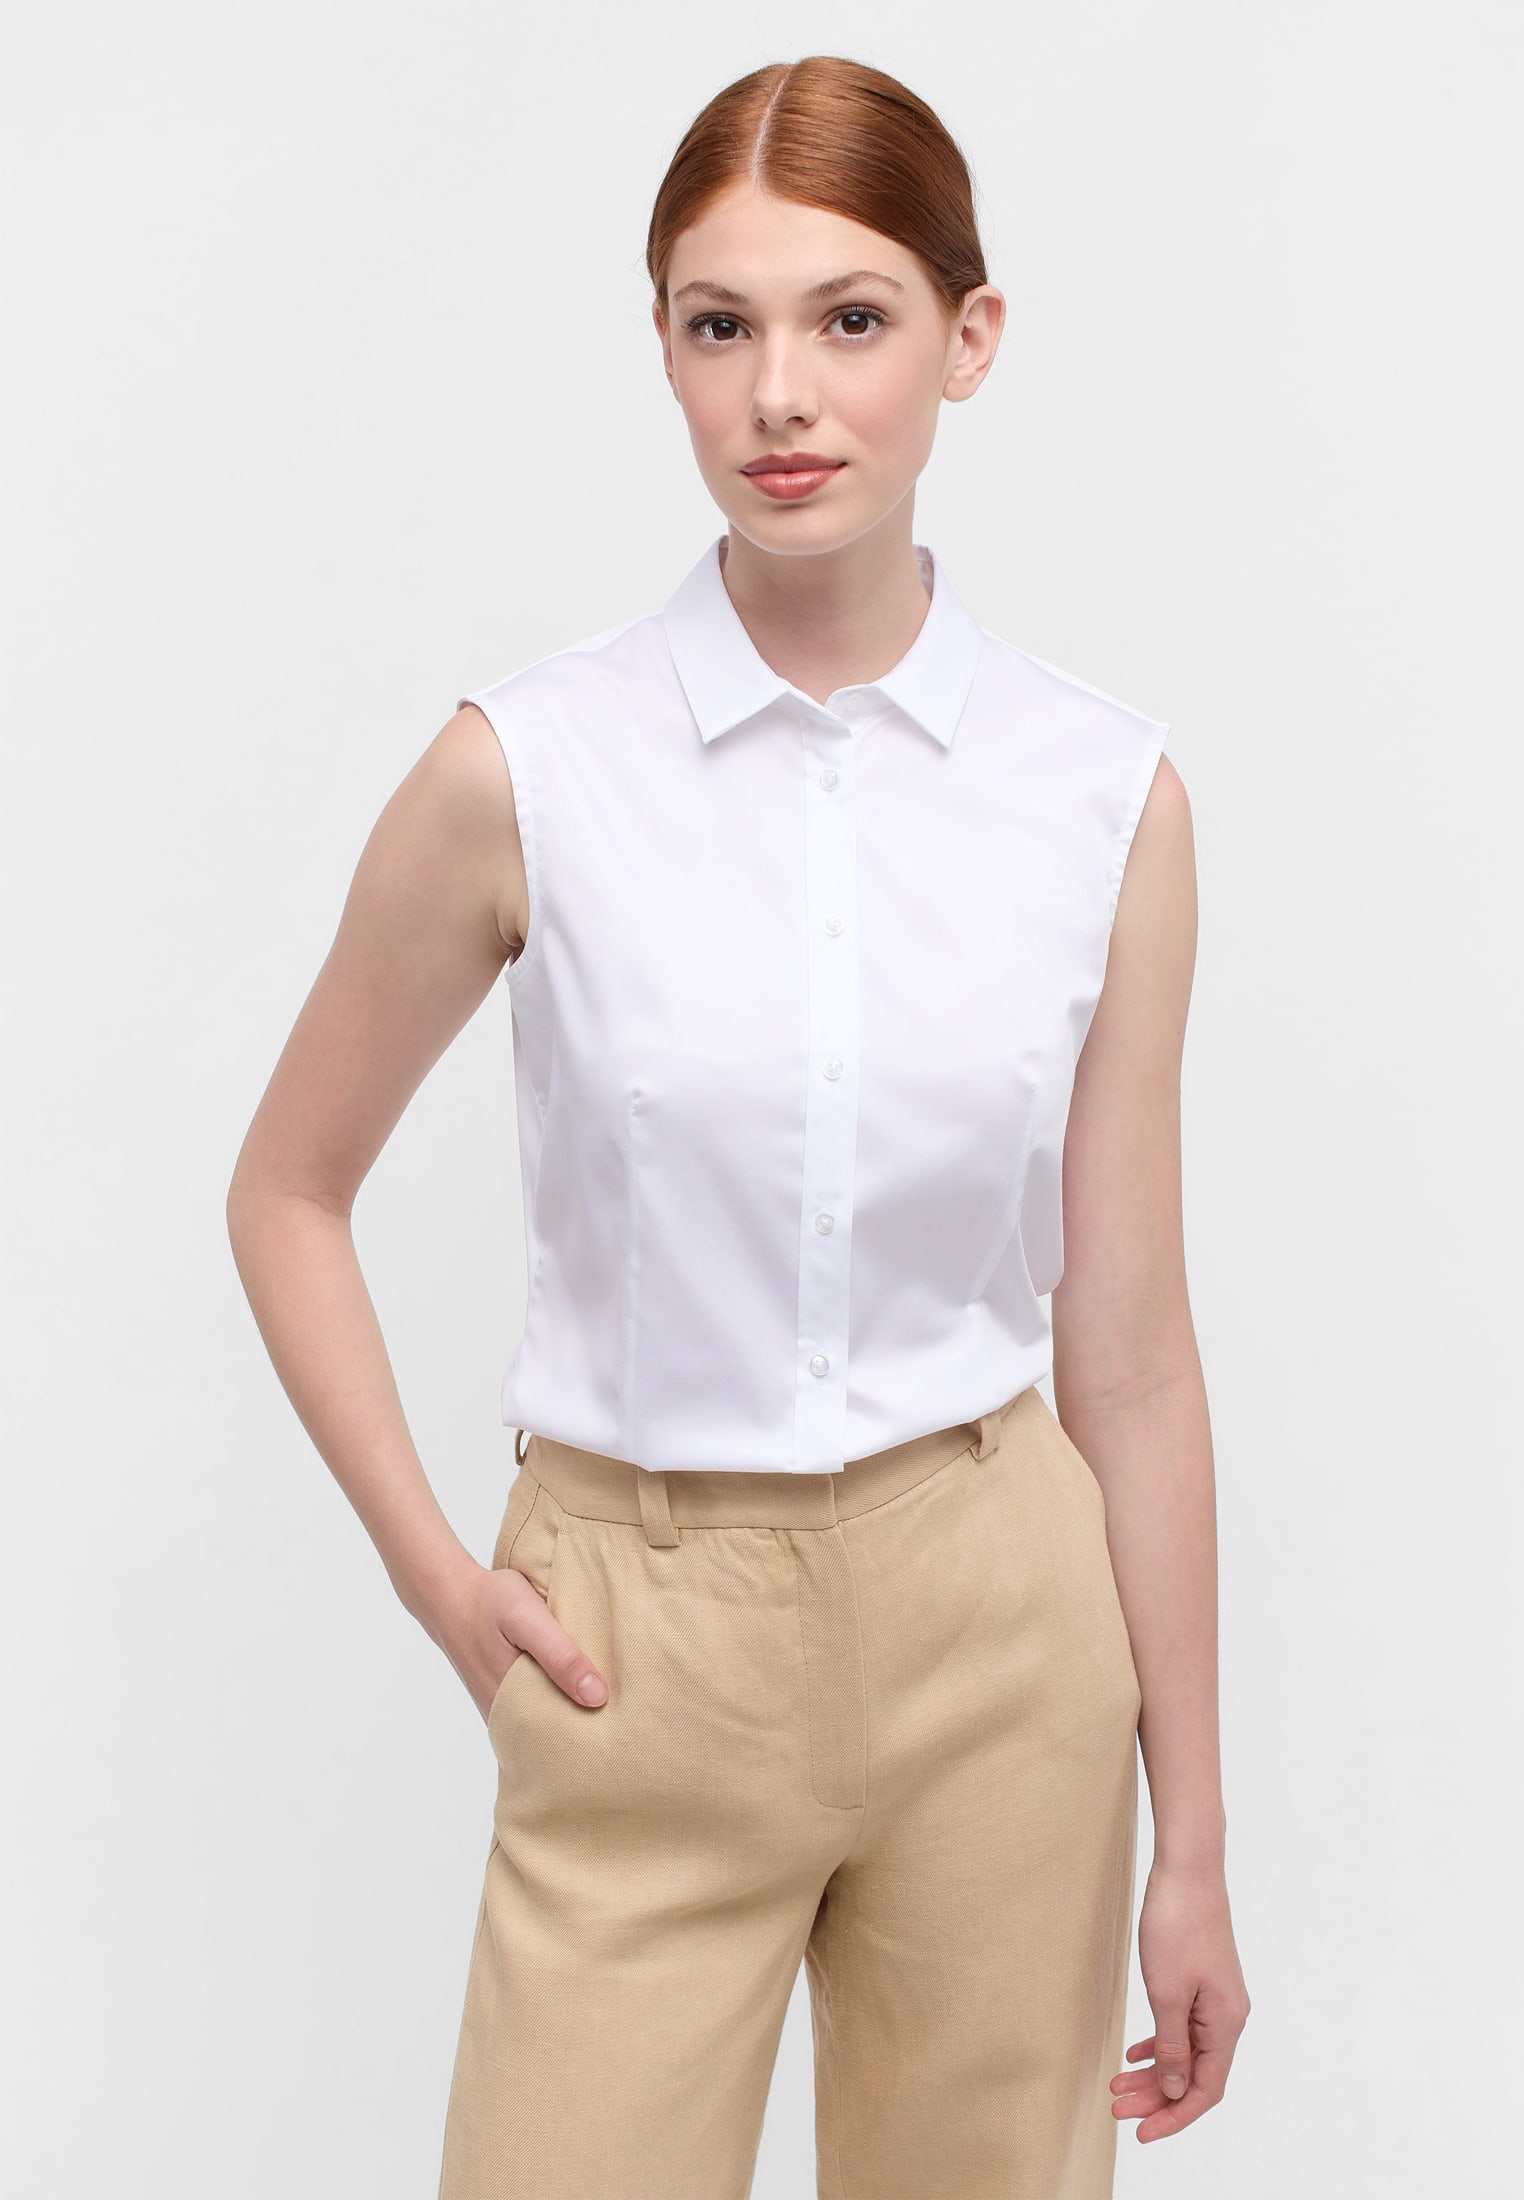 Bluse Arm Satin | Shirt | weiß unifarben ohne 34 | 2BL03768-00-01-34-sl | in weiß